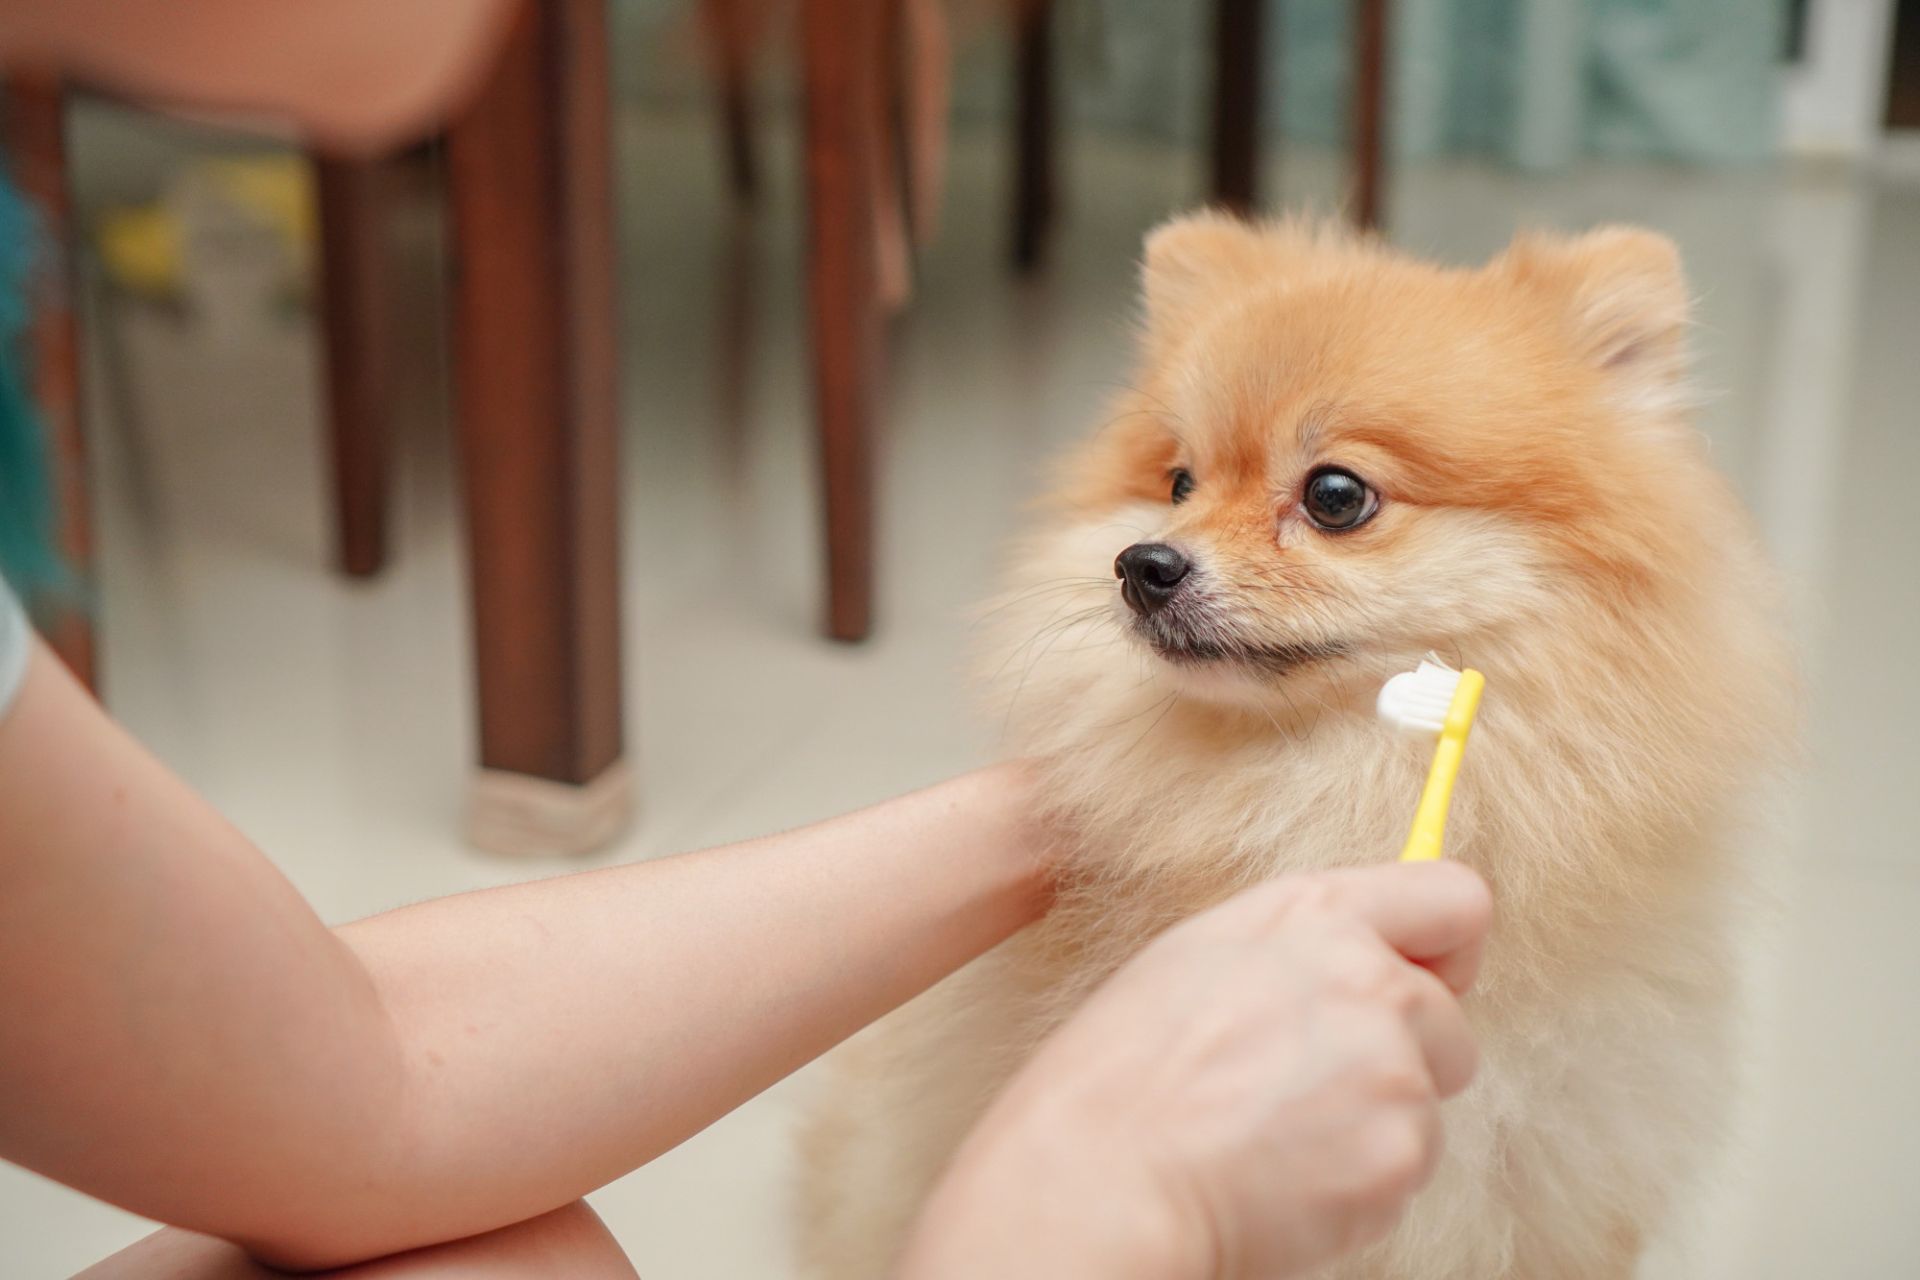 owner brushing dog's teeth